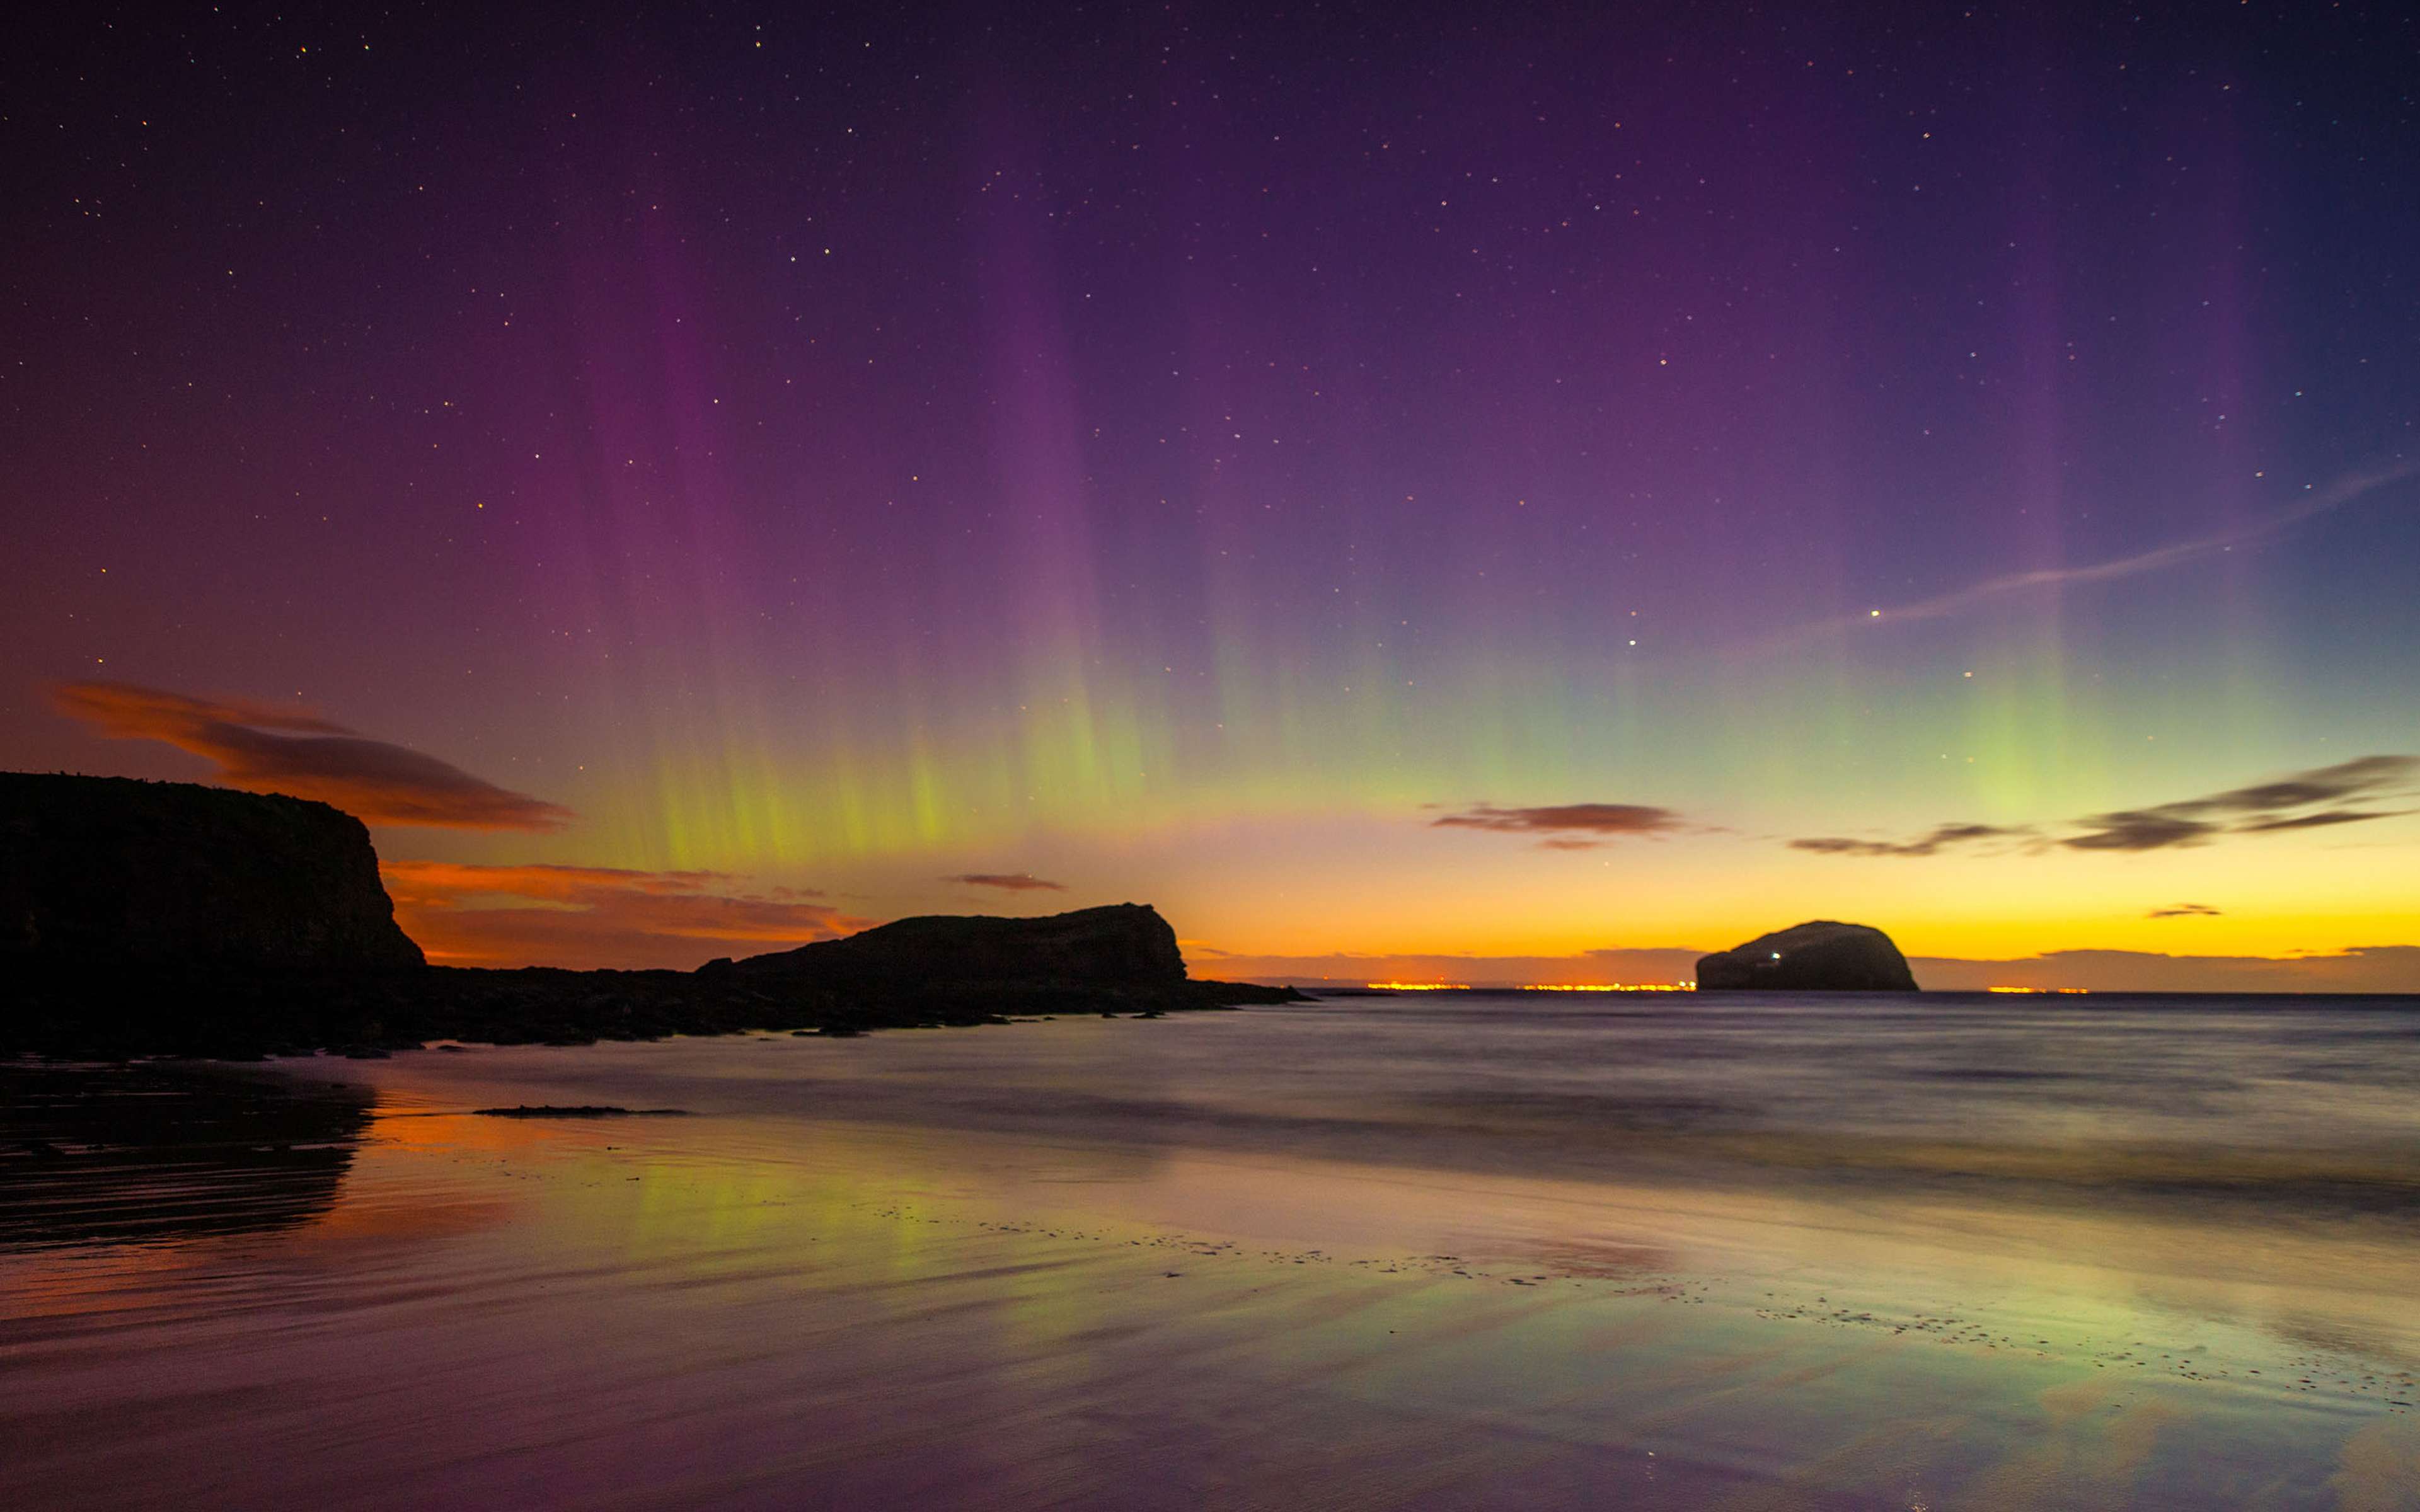 A stunning display of aurora captured in Scotland.